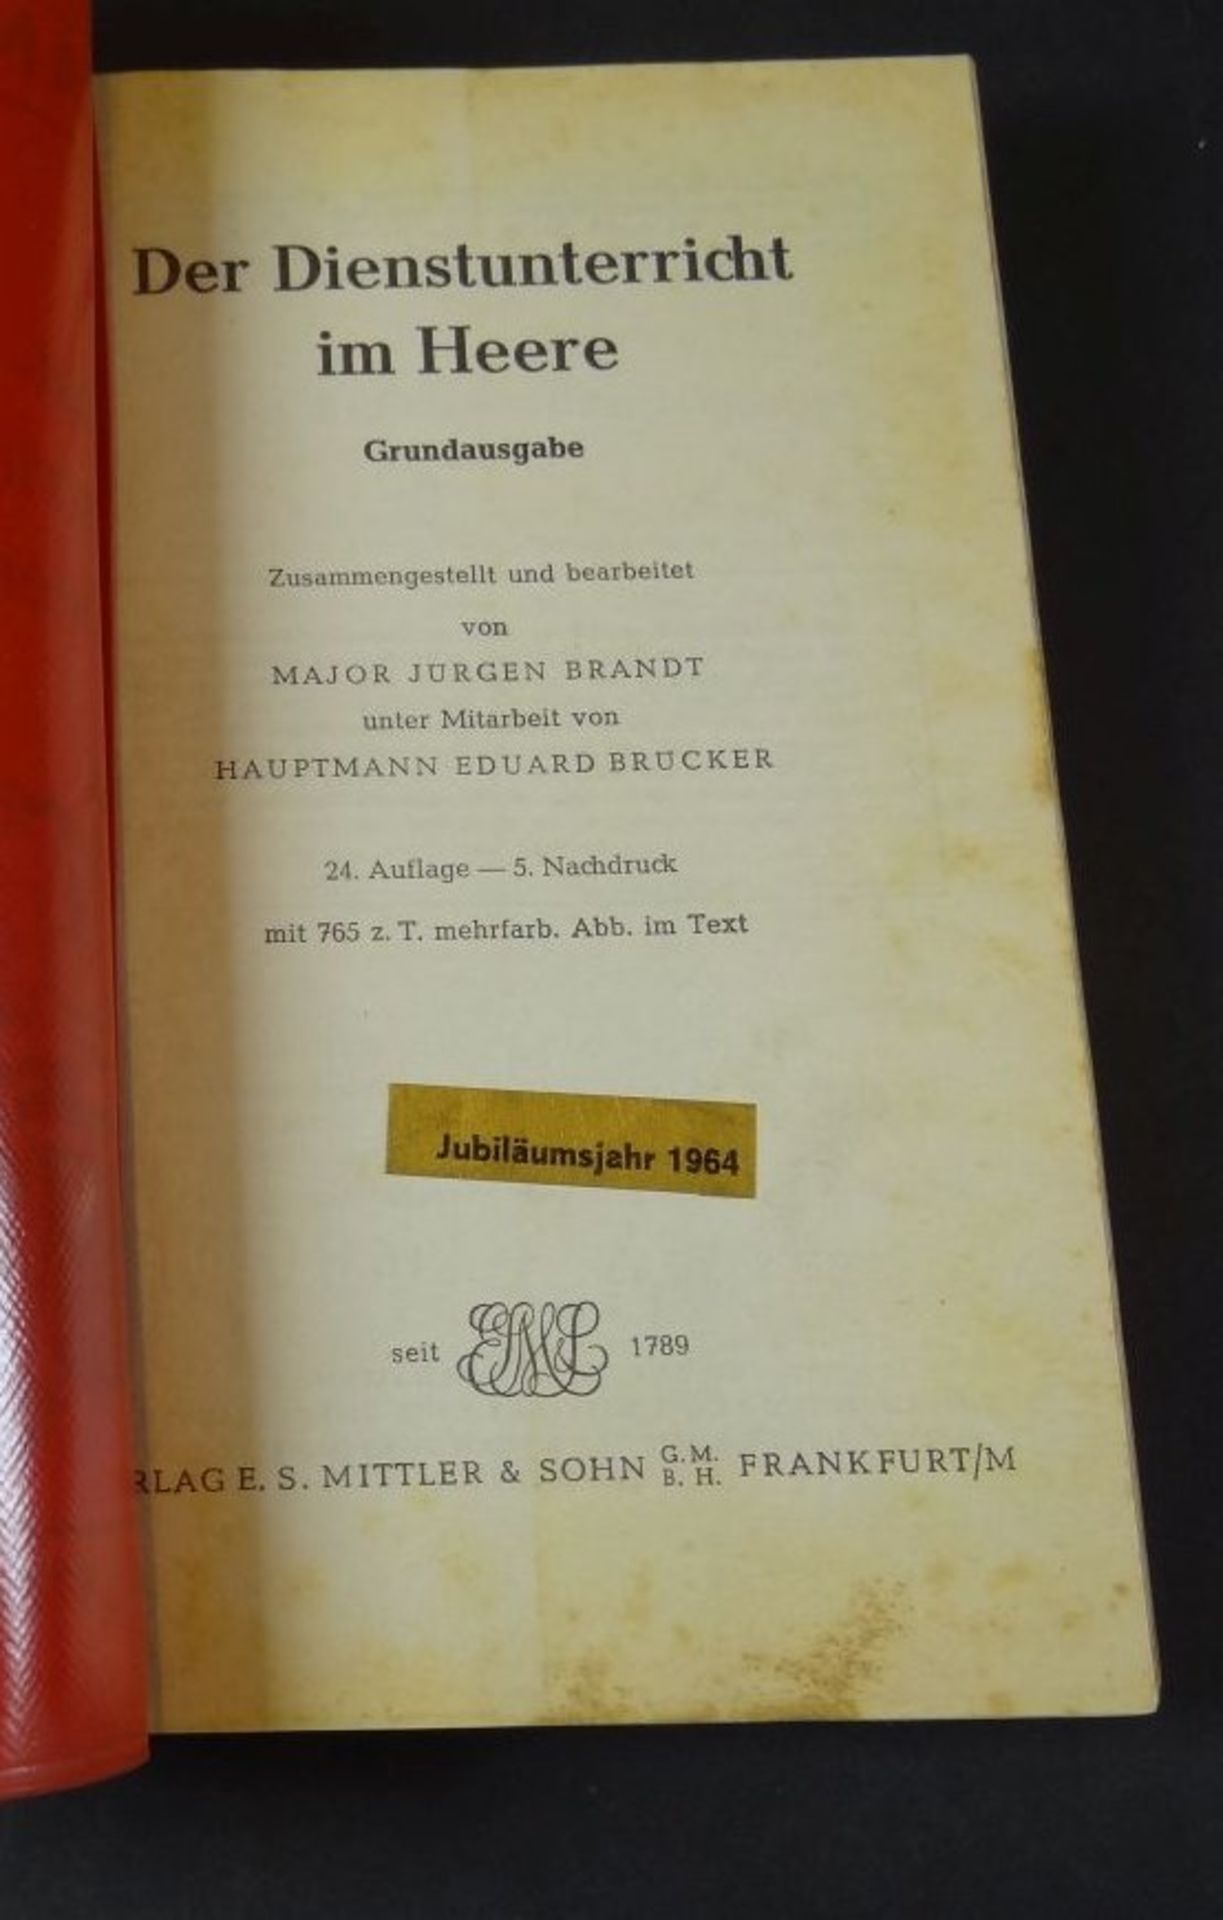 Brandt/Reibert "Der Dienstunterricht im Heer-Artillerie" 1964 - Bild 3 aus 5